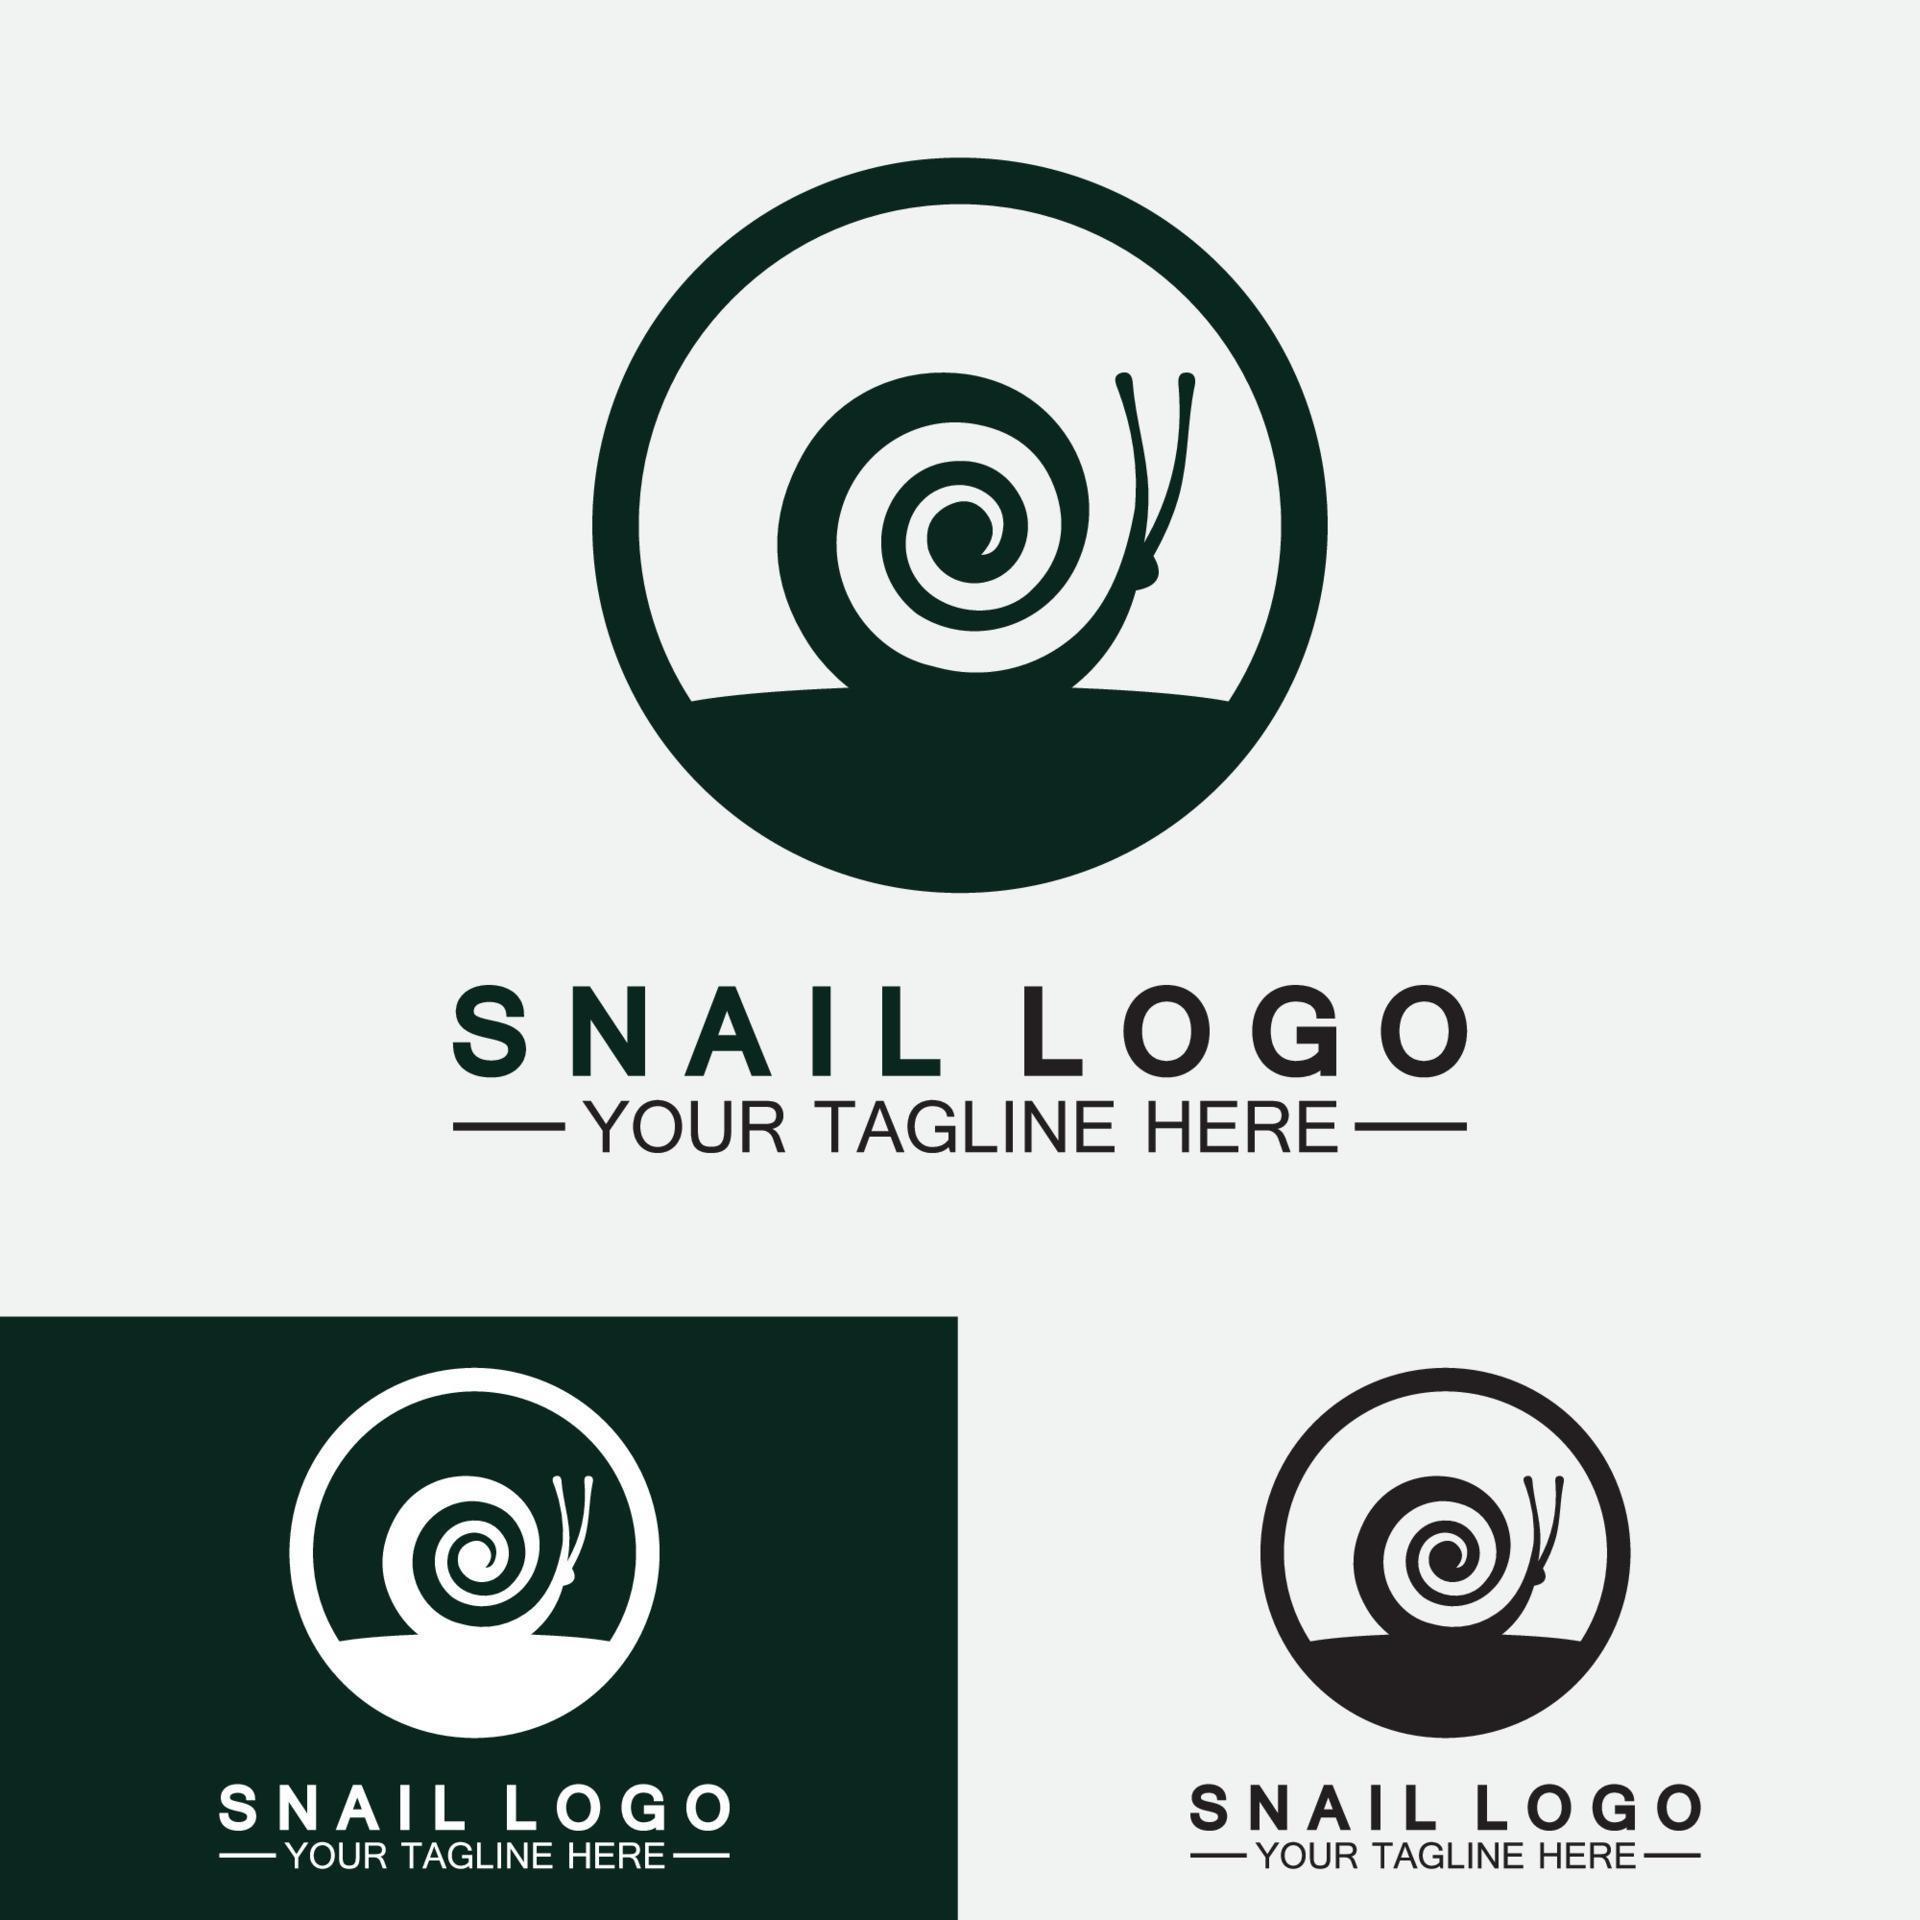 slak logo creatief modern design inspiratie vector